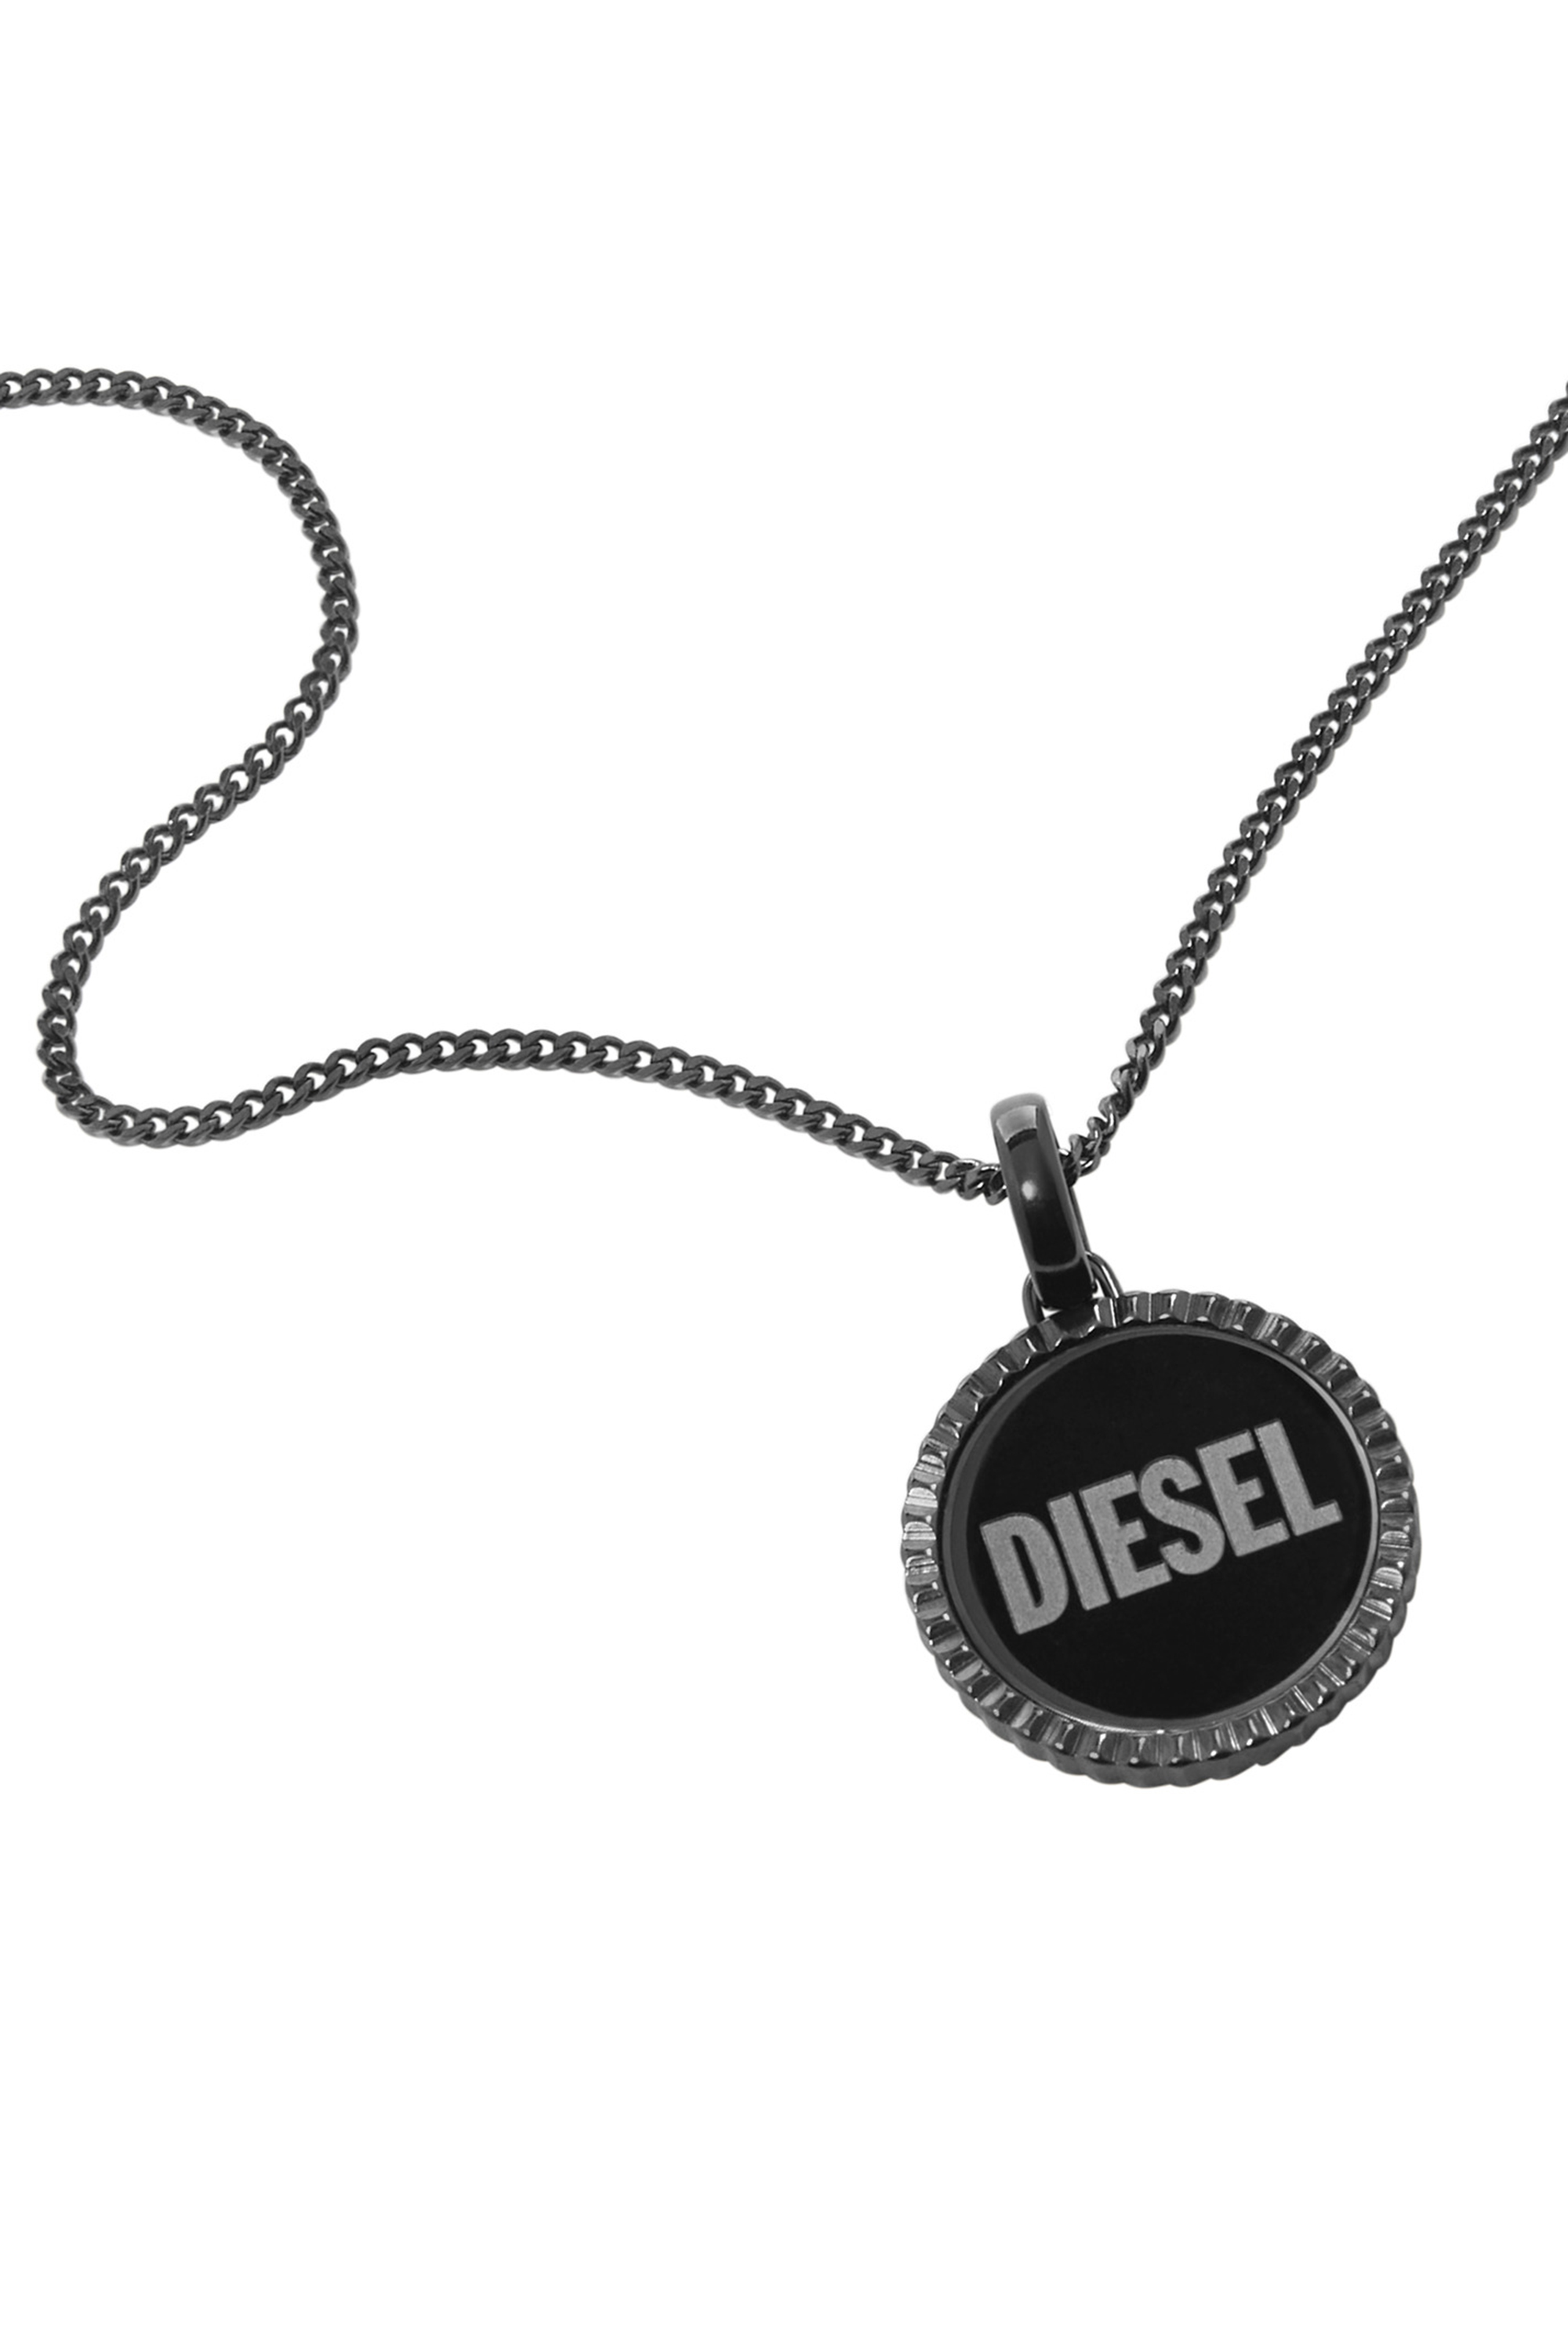 Diesel - DX1362, Black - Image 1